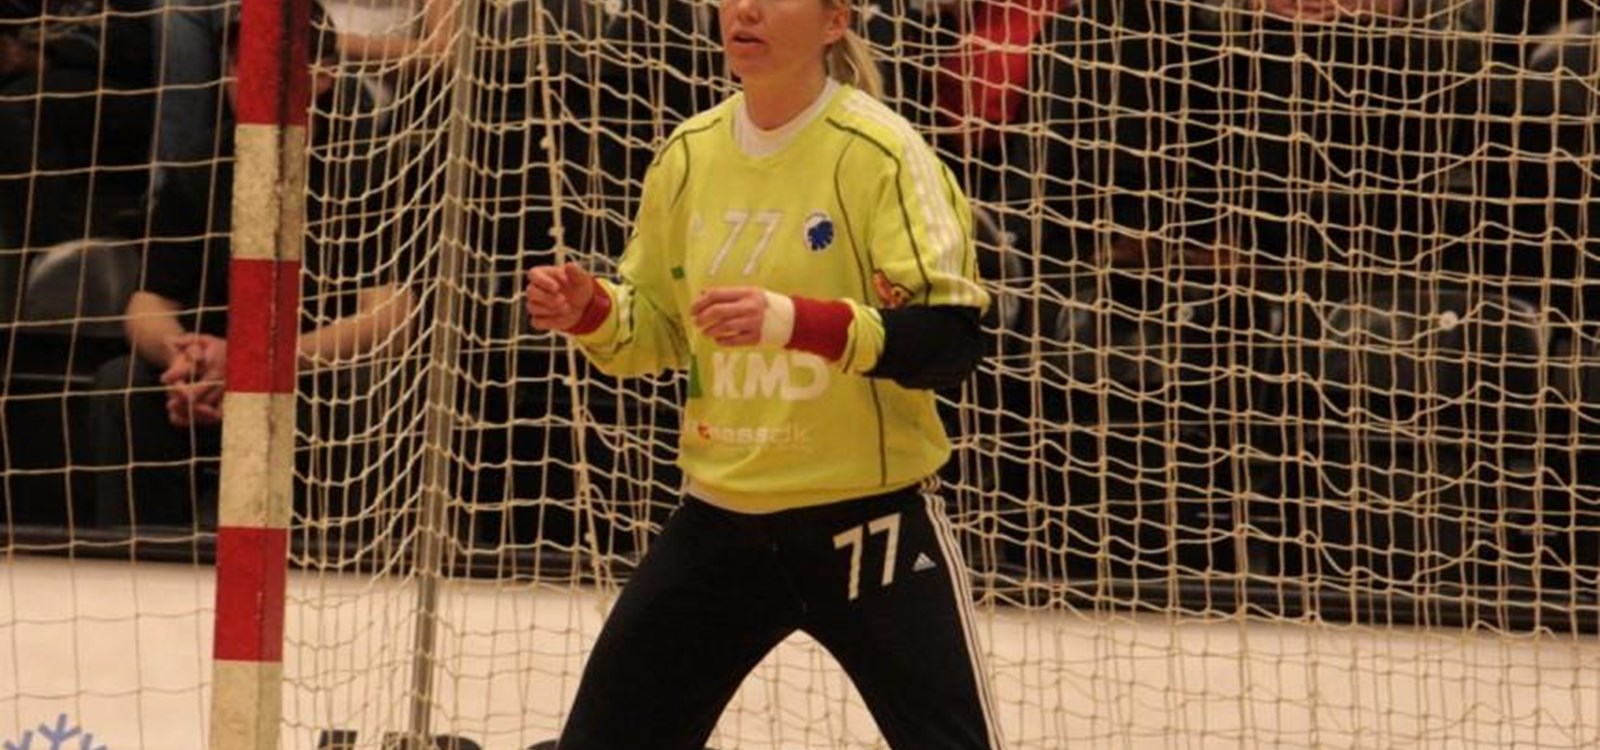 Verdas beste handballkeeper gjennom alle tider, Cecile Leganger, er klar for handballskule i Vang. Foto: By ZBOBZ - originally posted to Flickr as FCM-FCK 22/04/09, CC BY 2.0